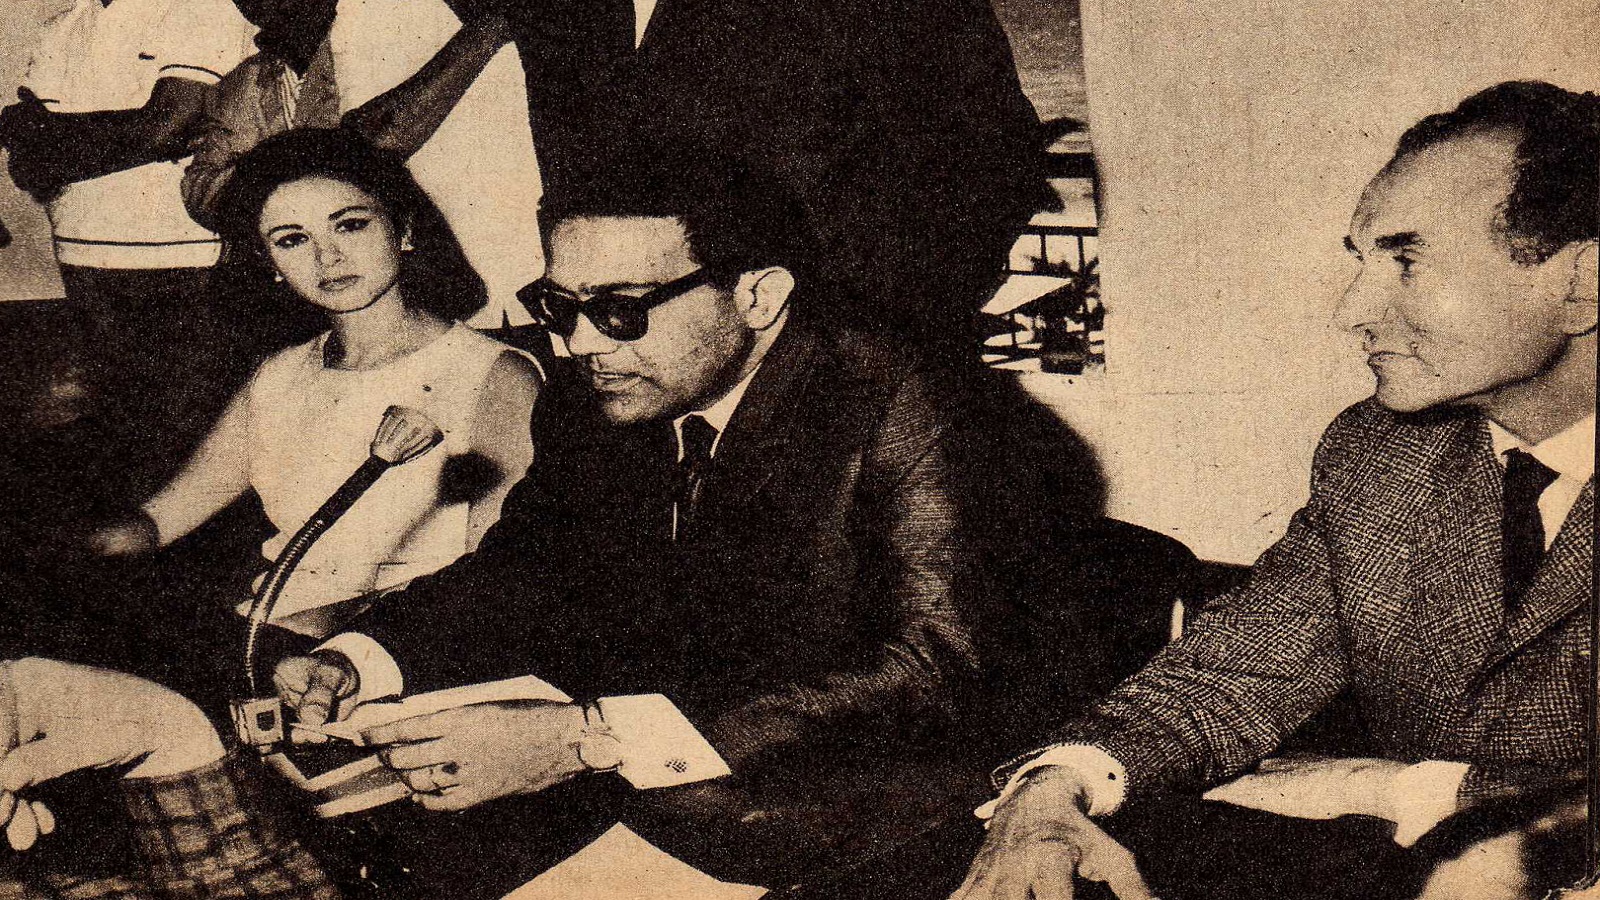 كان 1964: فاتن حمامة مع عز الدين فؤاد وكمال الشيخ عند تقديم فيلم "الليلة الأخيرة".